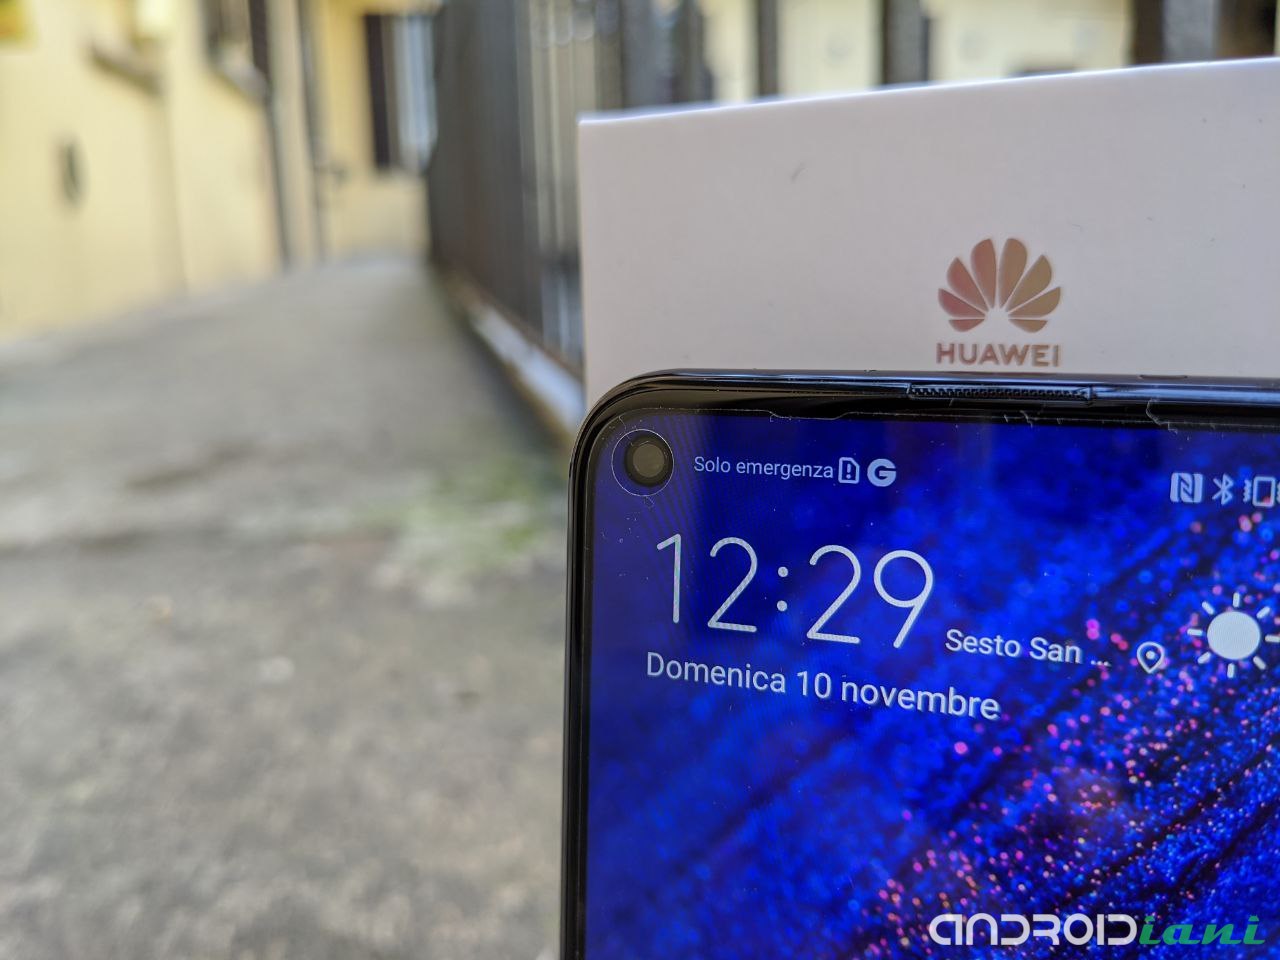 Huawei Nova 5T: mellanklass som tros vara toppen | översikt 6 